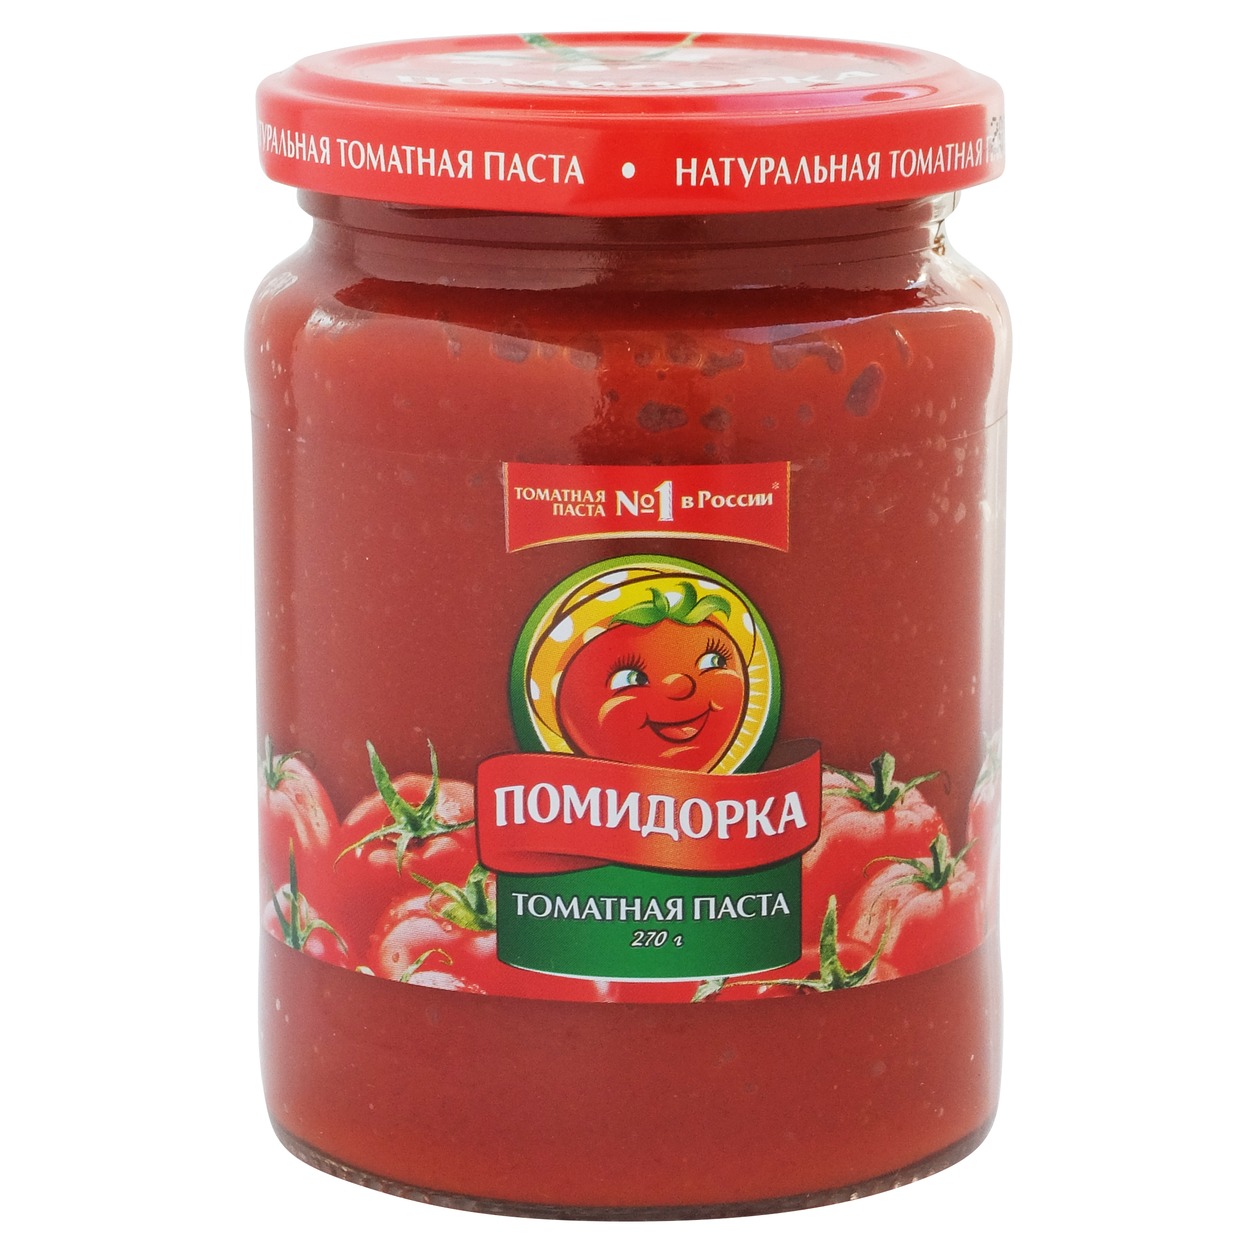 Паста томатная Помидорка 250мл по акции в Пятерочке